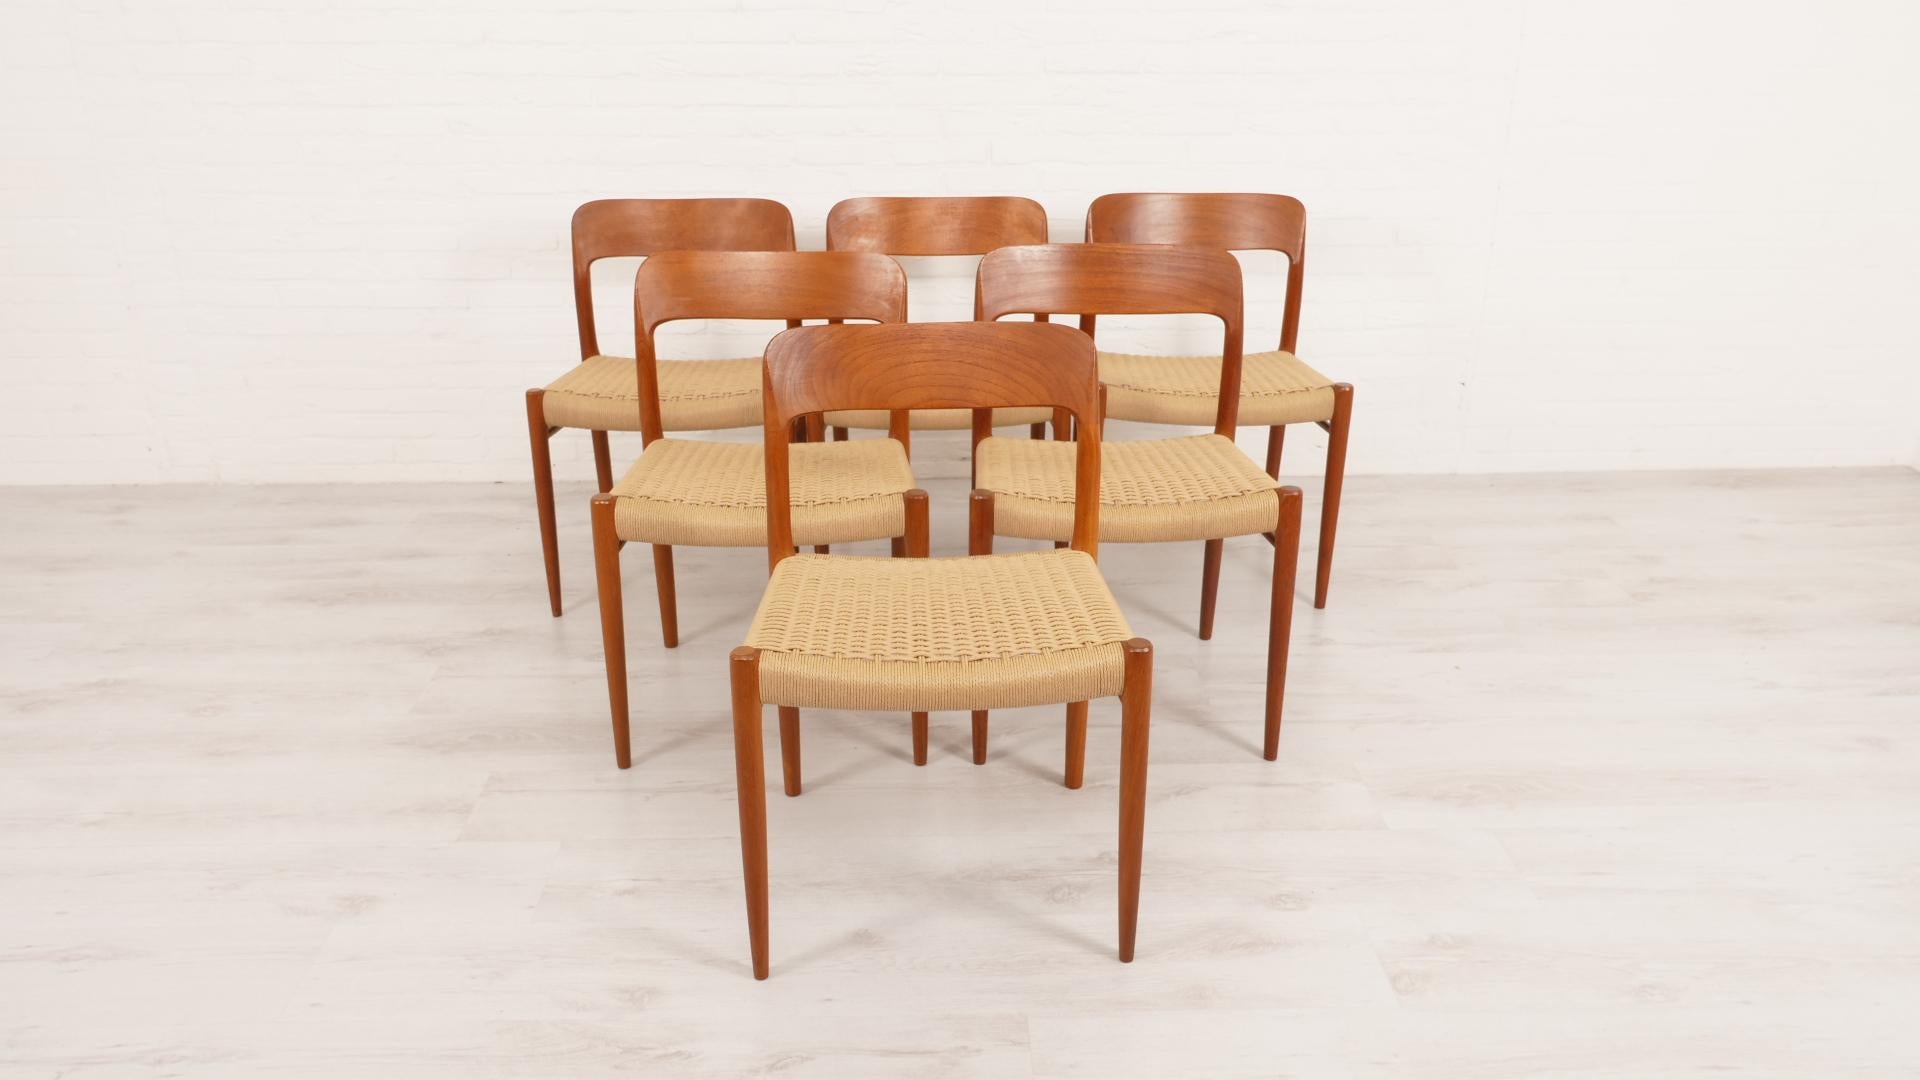 Ensemble de 6 belles chaises de salle à manger vintage danoises. Ces chaises ont été conçues par Niels Otto Møller. Les chaises sont finies en teck et équipées de nouveaux cordons en papier.

Période de conception : 1950 - 1960
Style : Mid-century